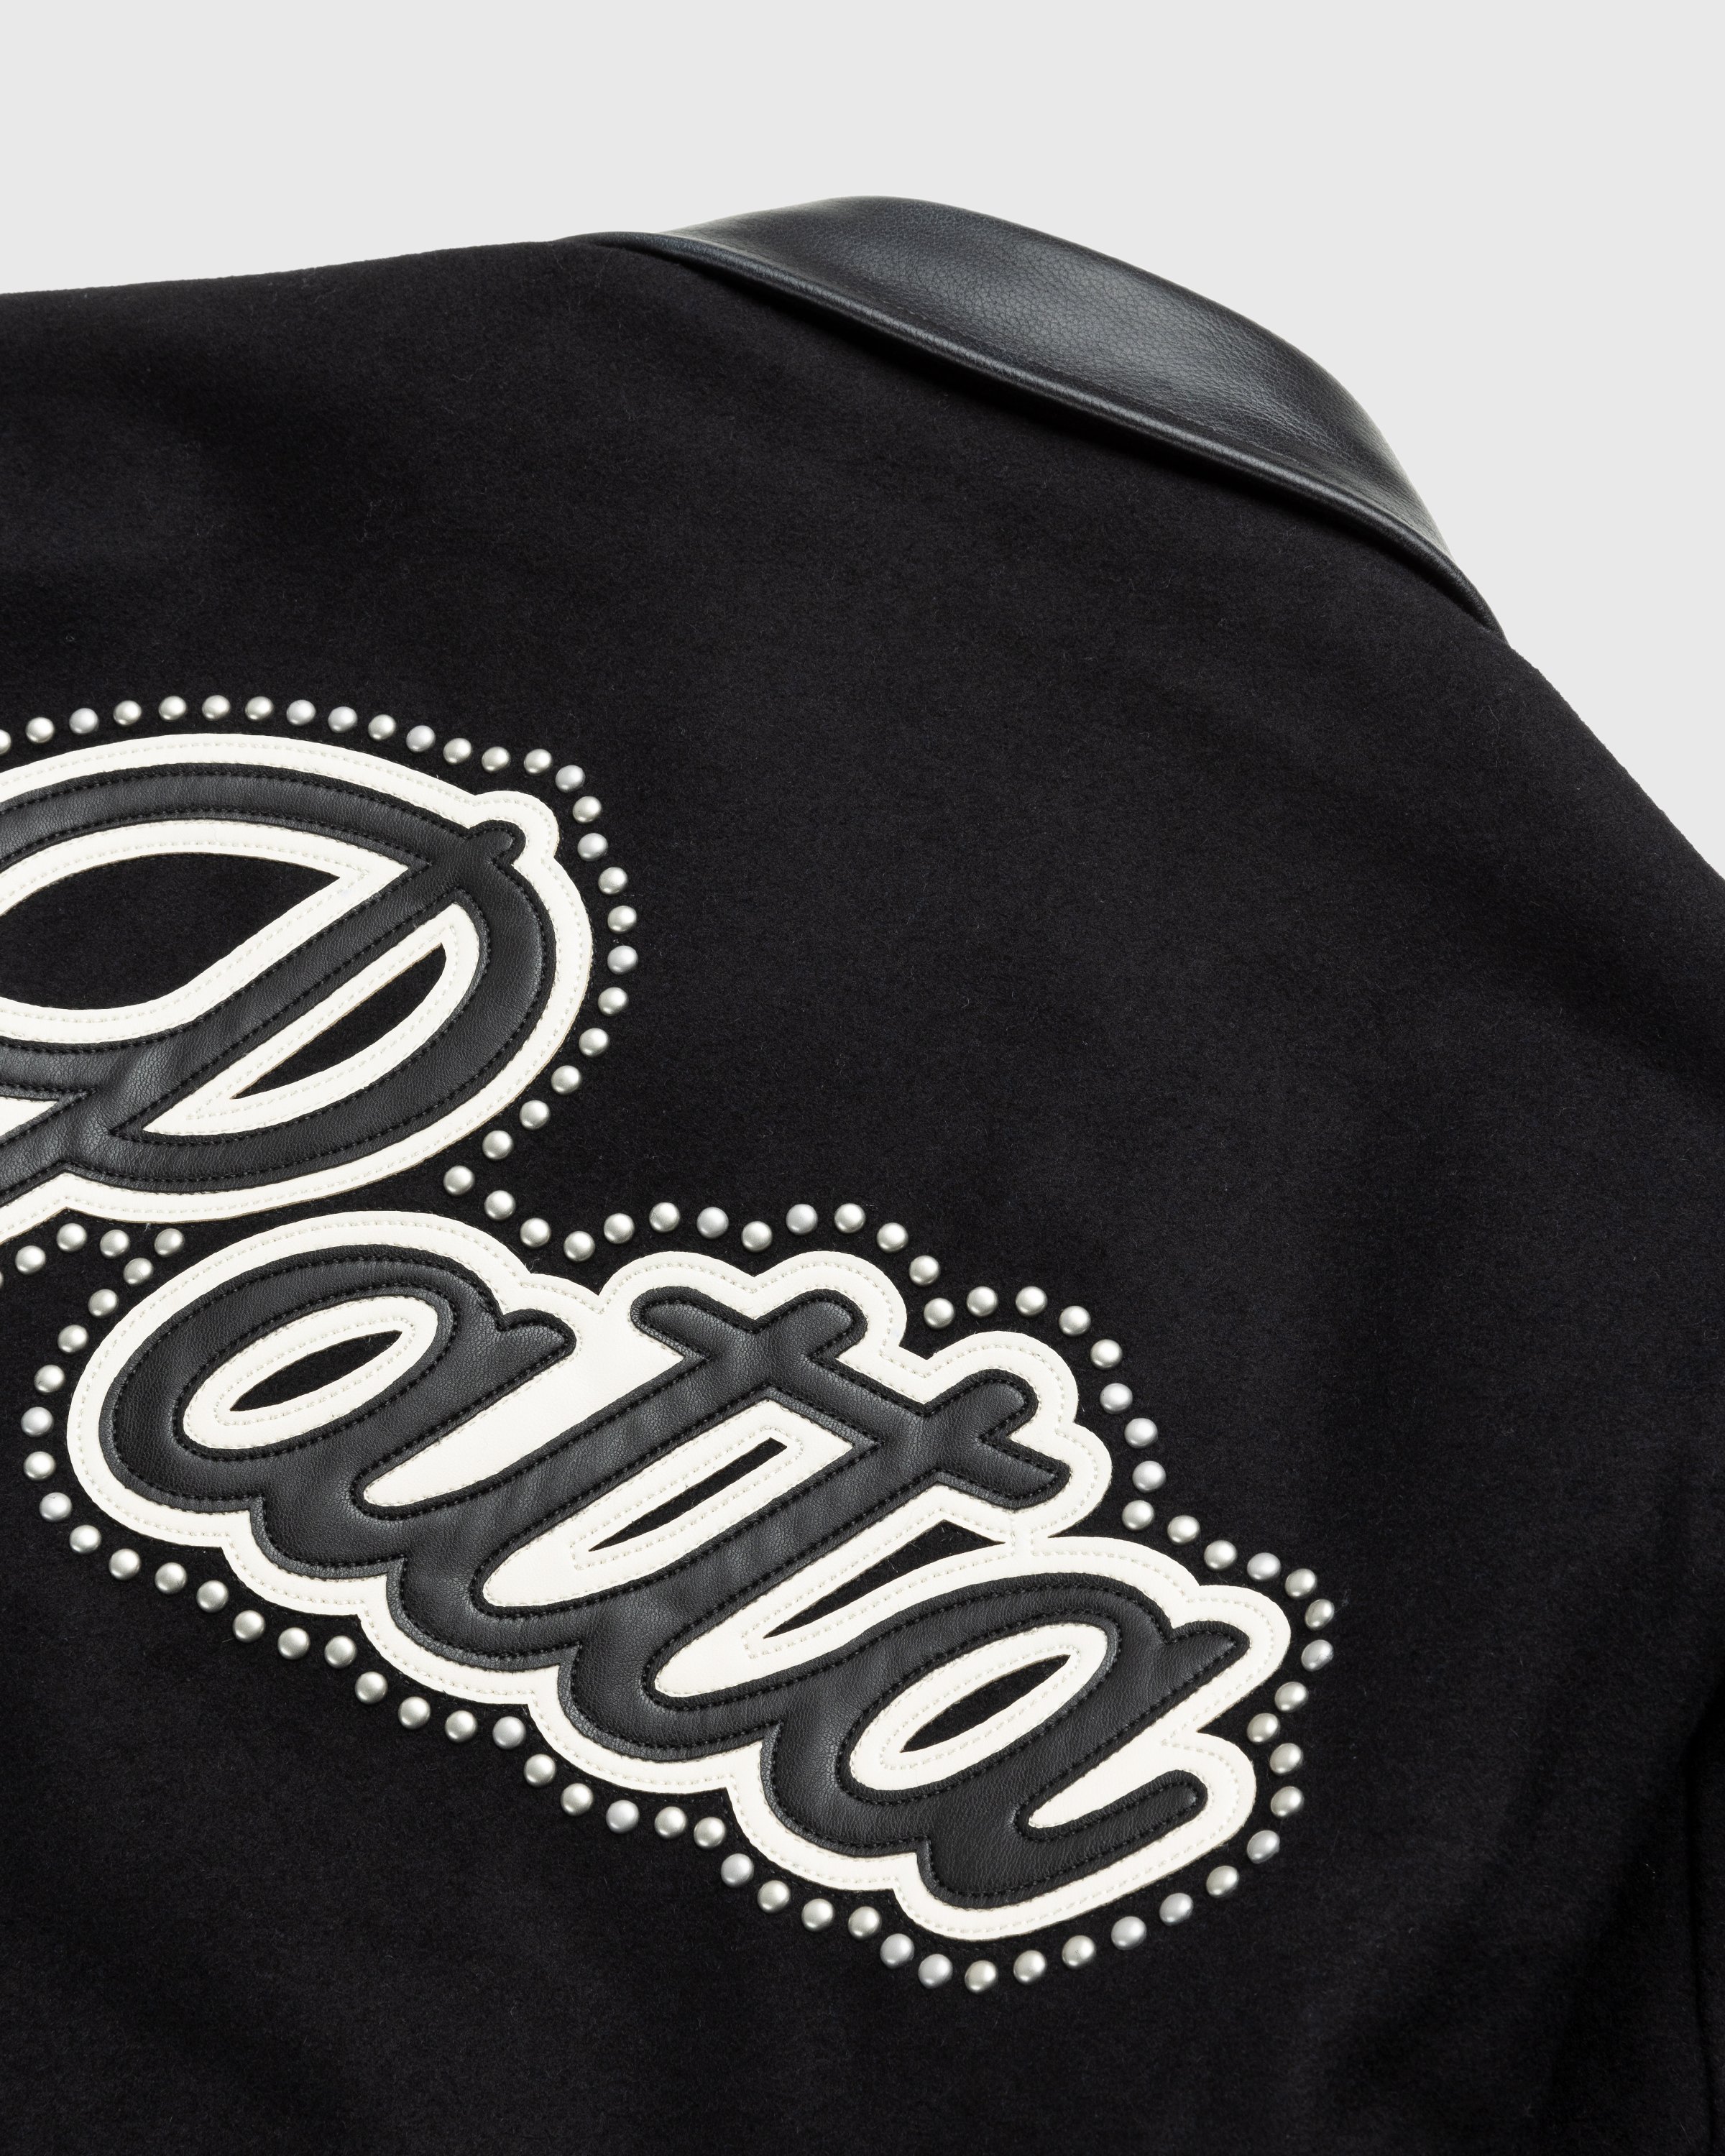 Patta - Uptown Wool Jacket Black - Clothing - Black - Image 3